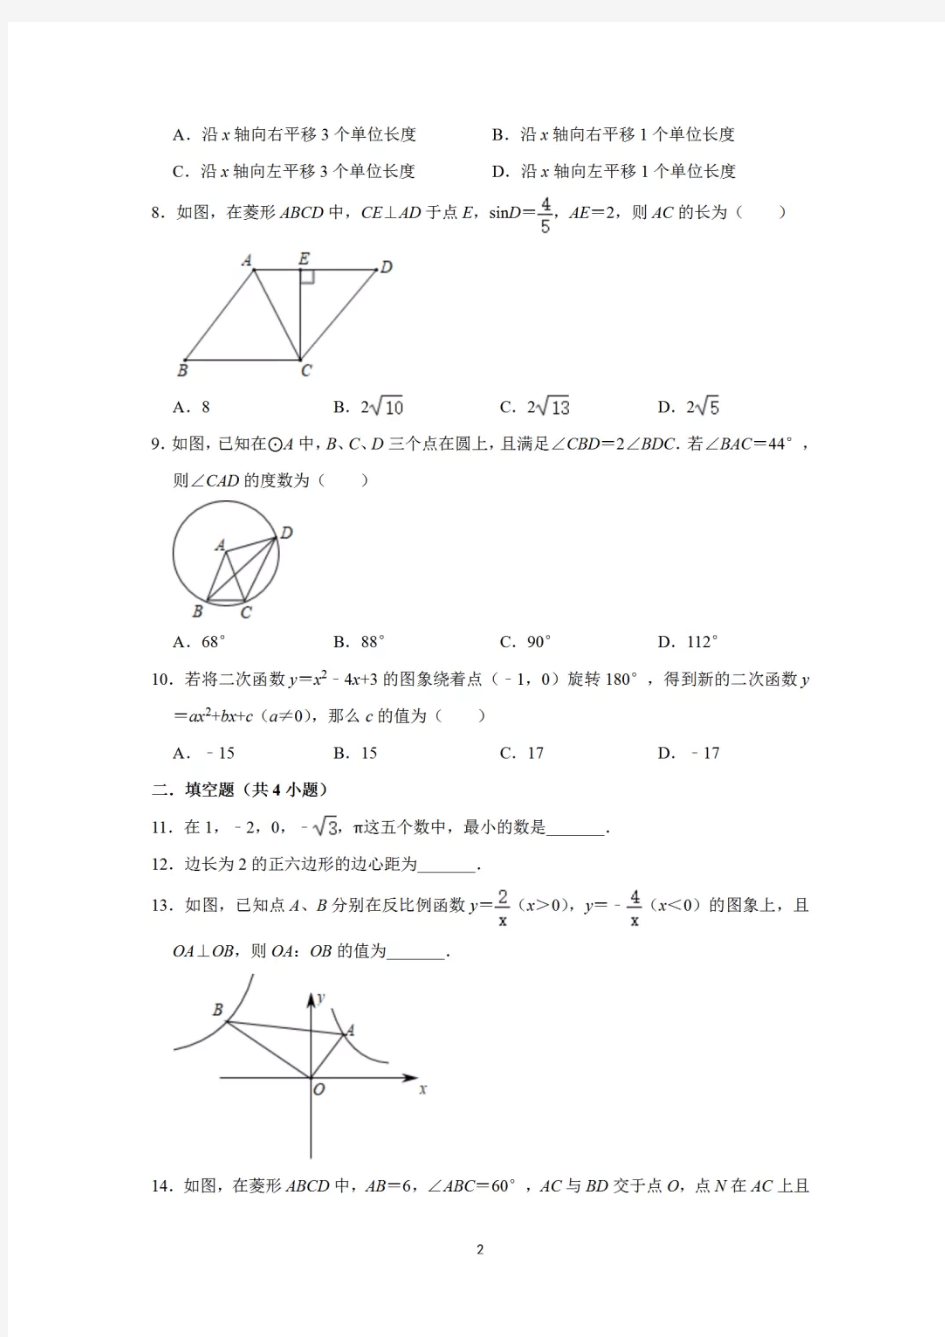 2020年陕西省初中学业水平考试数学模拟试卷(二)及答案解析